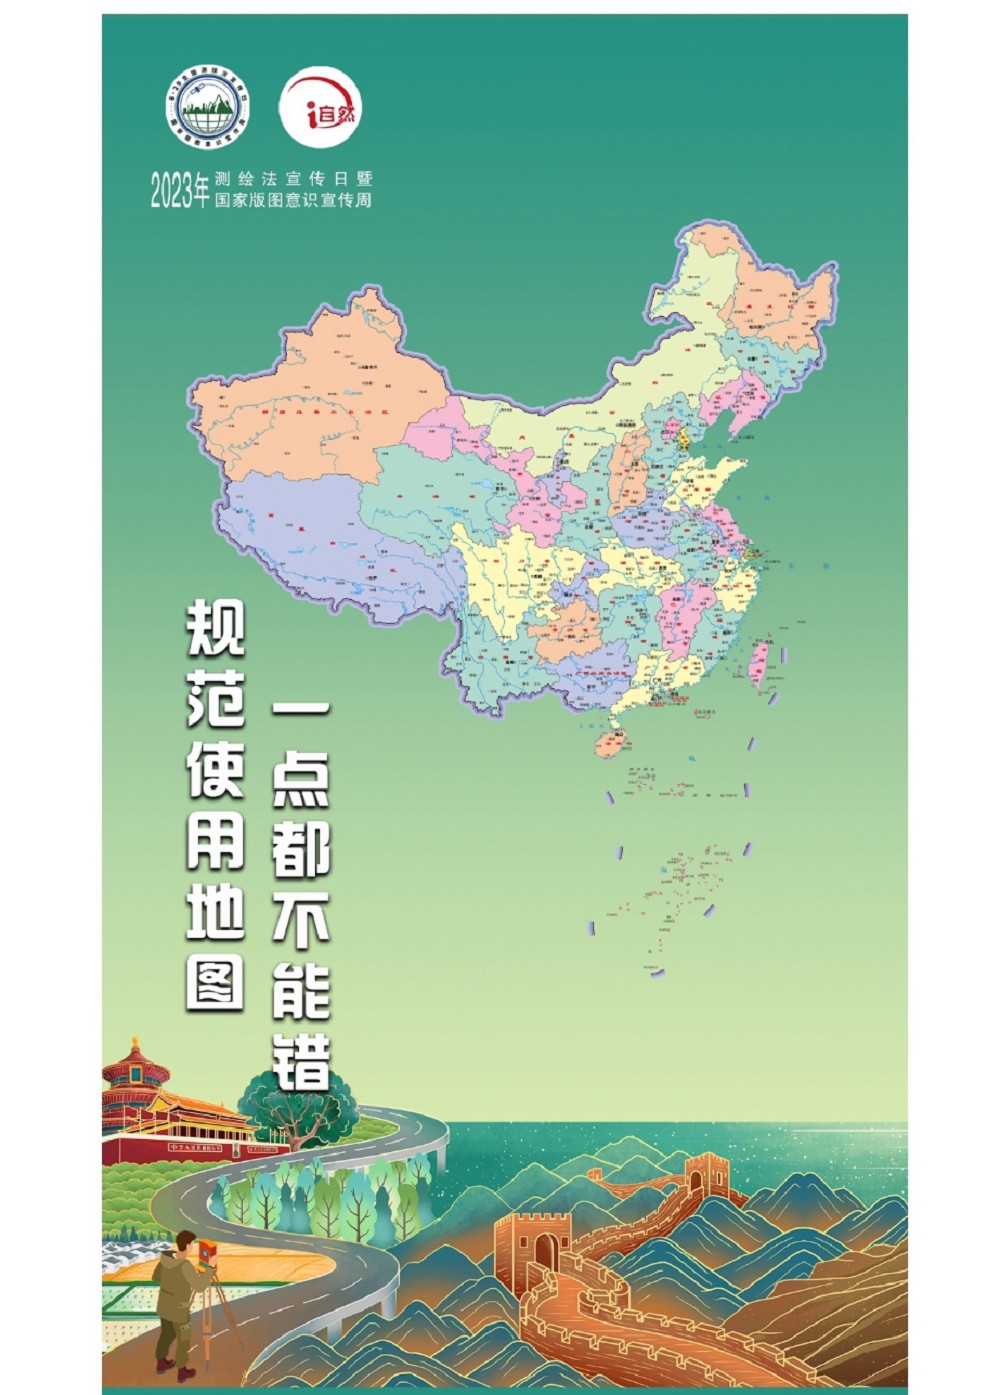 中國自然資源部發布的標準版地圖